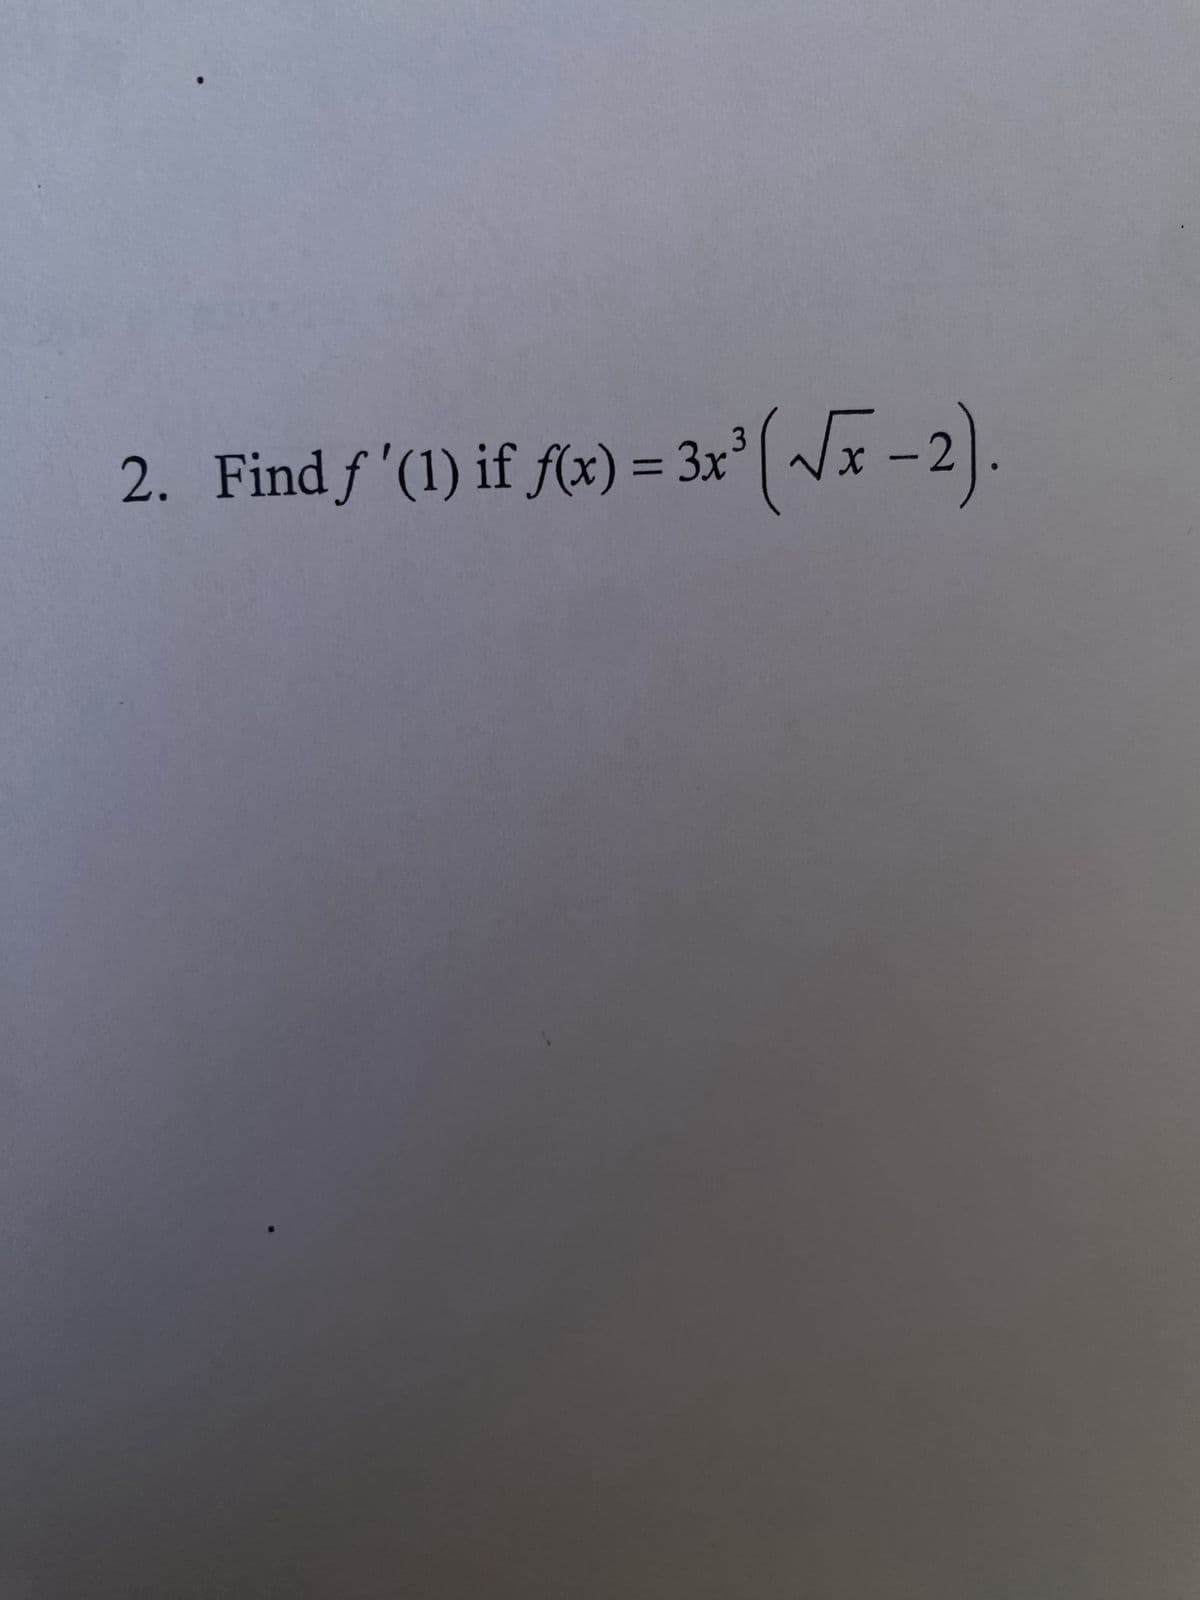 2. Find f'(1) if fx) = 3x³ (√x-2).